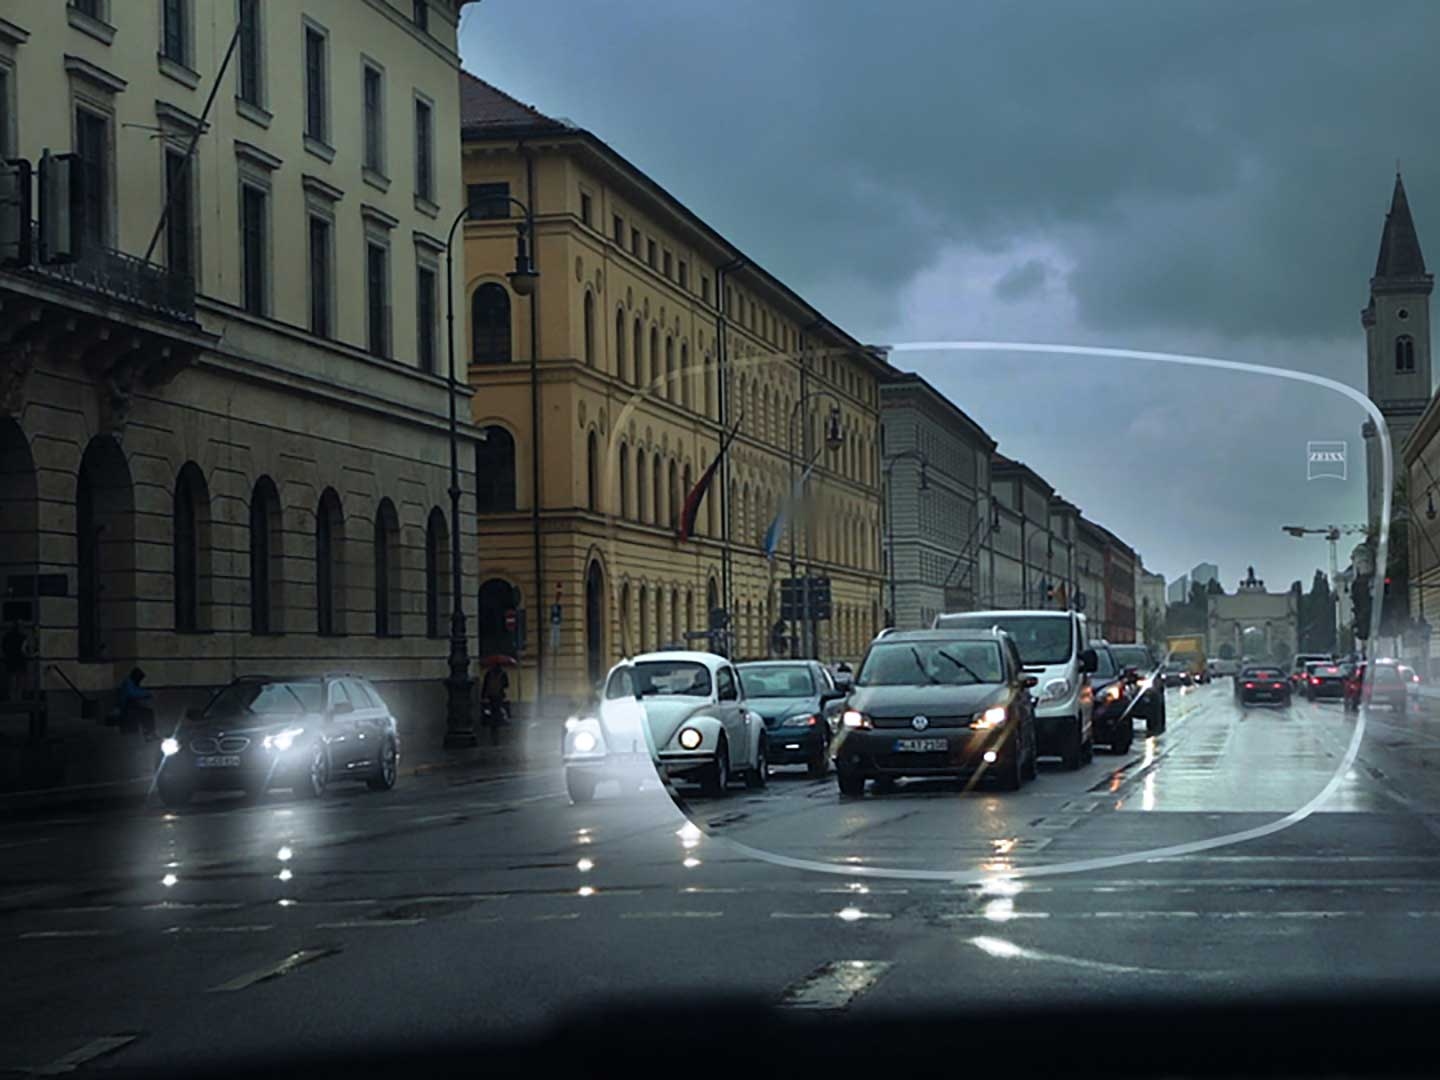 Das Bild veranschaulicht schlechte Sichtverhältnisse unter widrigen Lichtbedingungen auf einer Straße. Dargestellt ist die Sicht durch ein Brillenglas aus dem Auto heraus. 